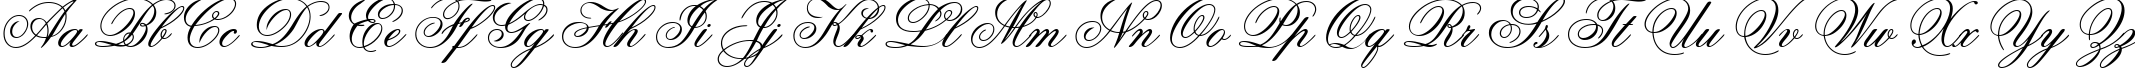 Пример написания английского алфавита шрифтом Ouverture script